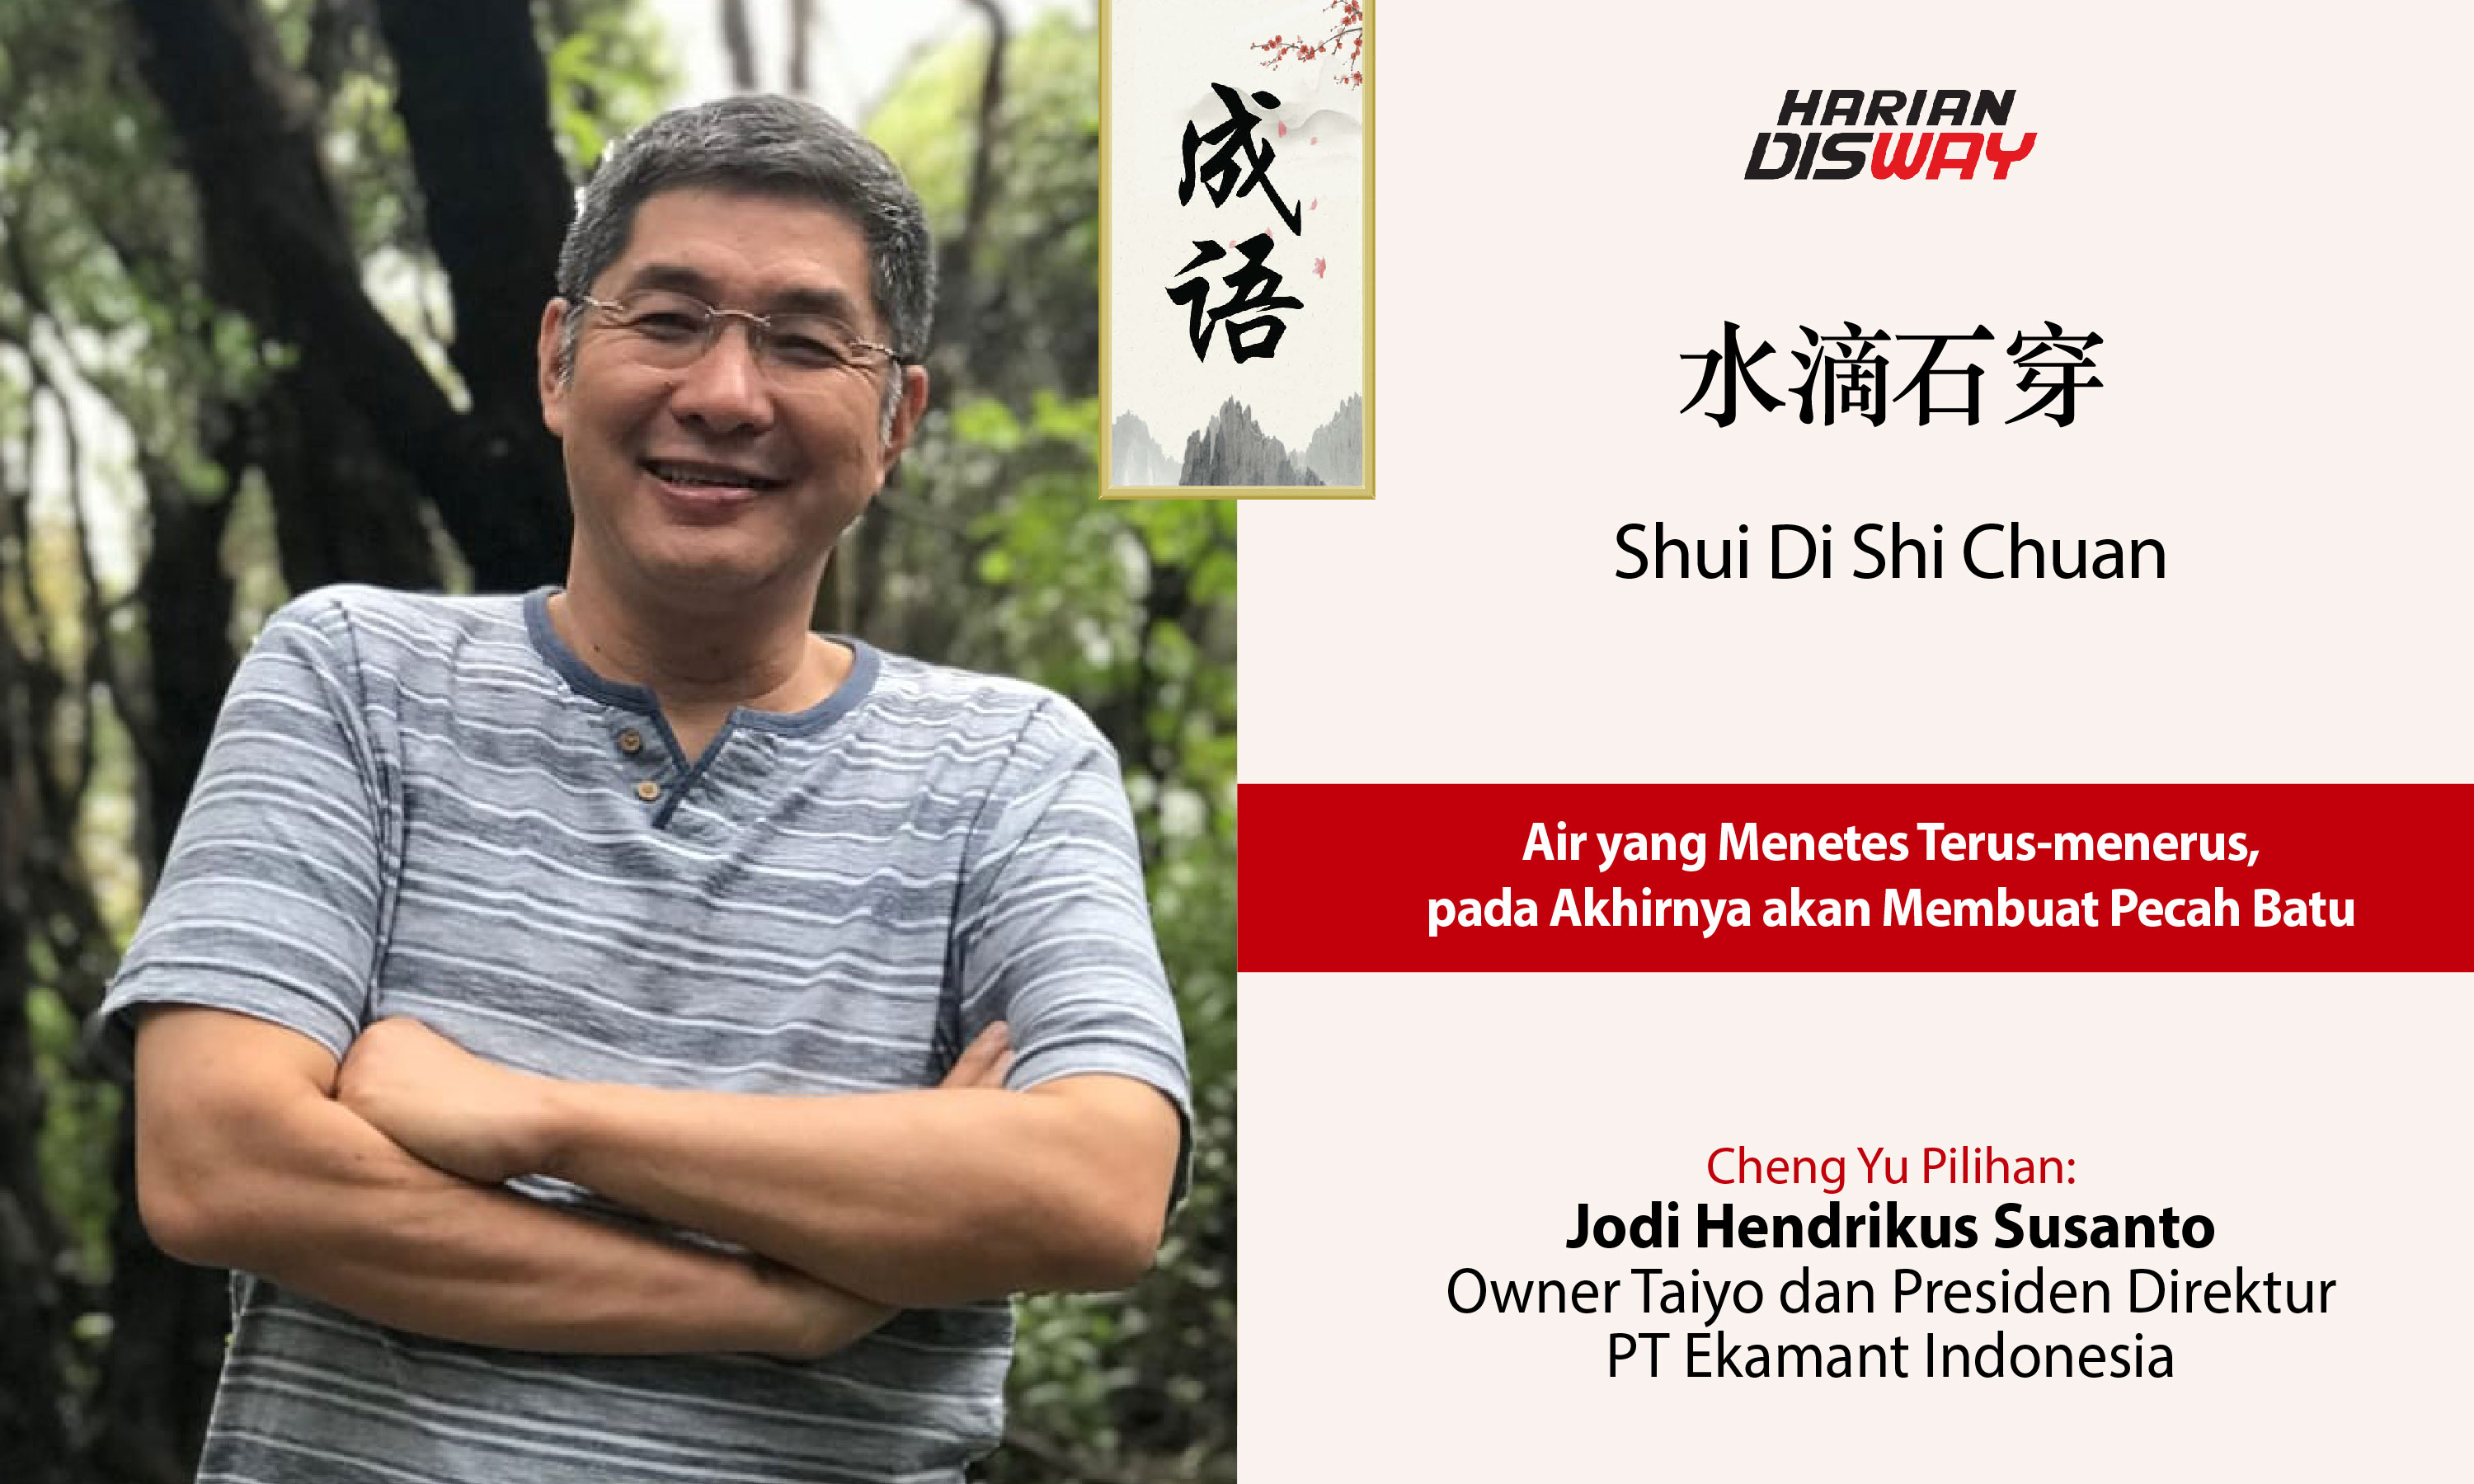 Cheng Yu Pilihan Owner Taiyo Jodi Hendrikus Susanto: Shui Di Shi Chuan